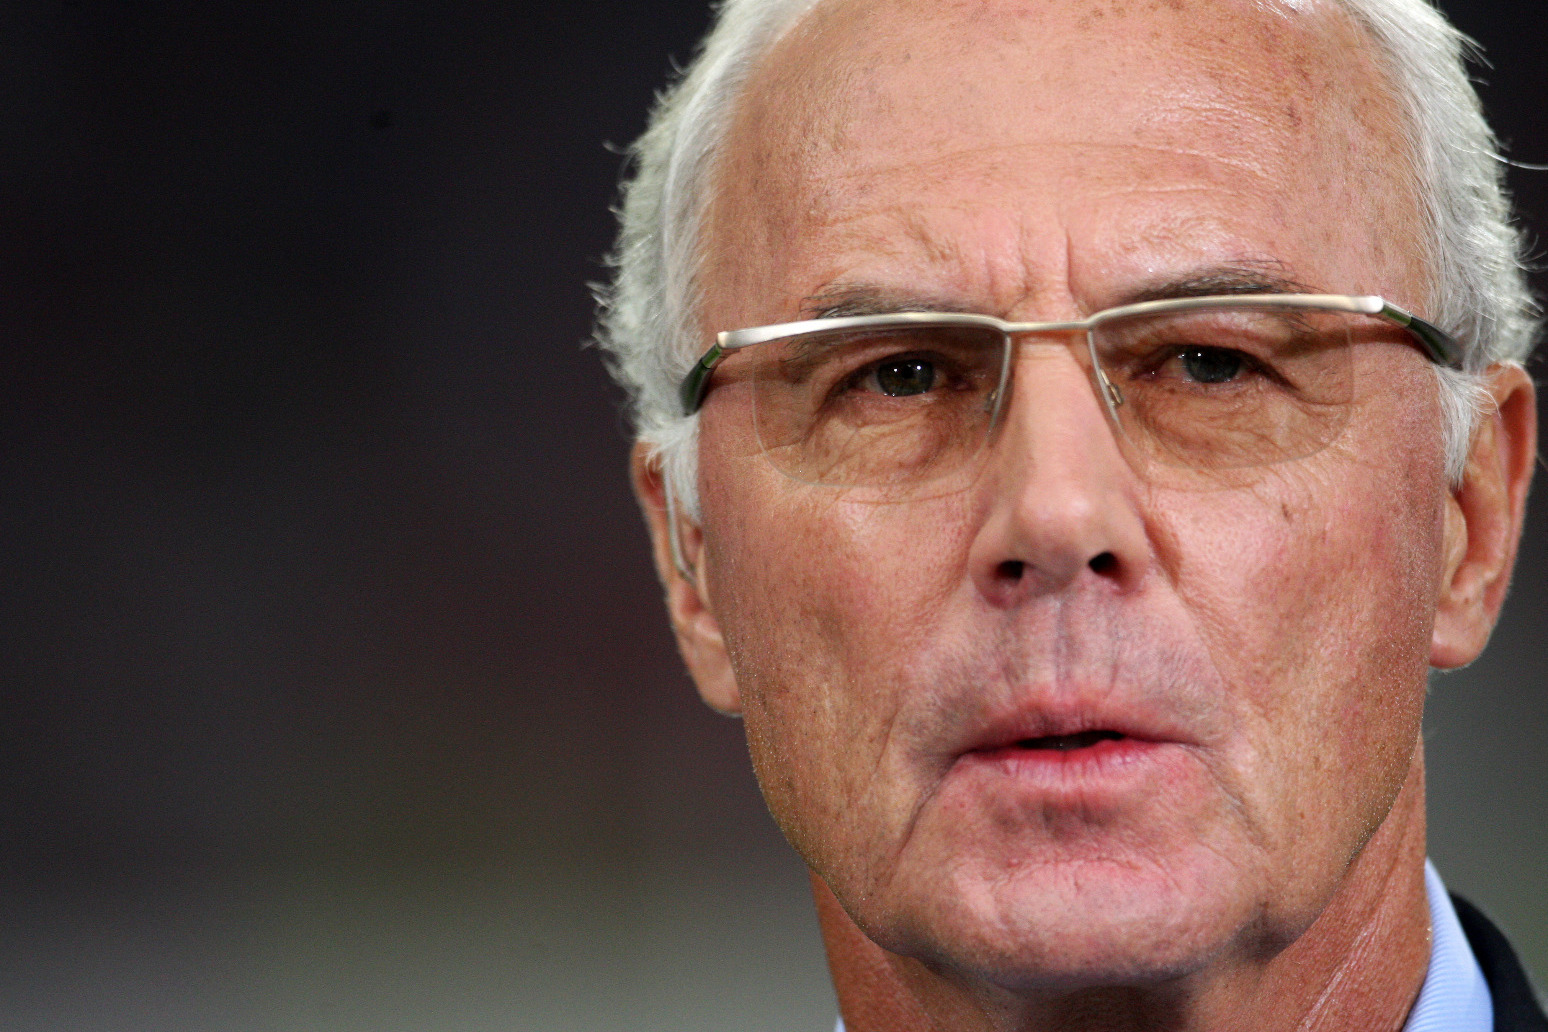 Germany and Bayern Munich great Franz Beckenbauer dies aged 78 